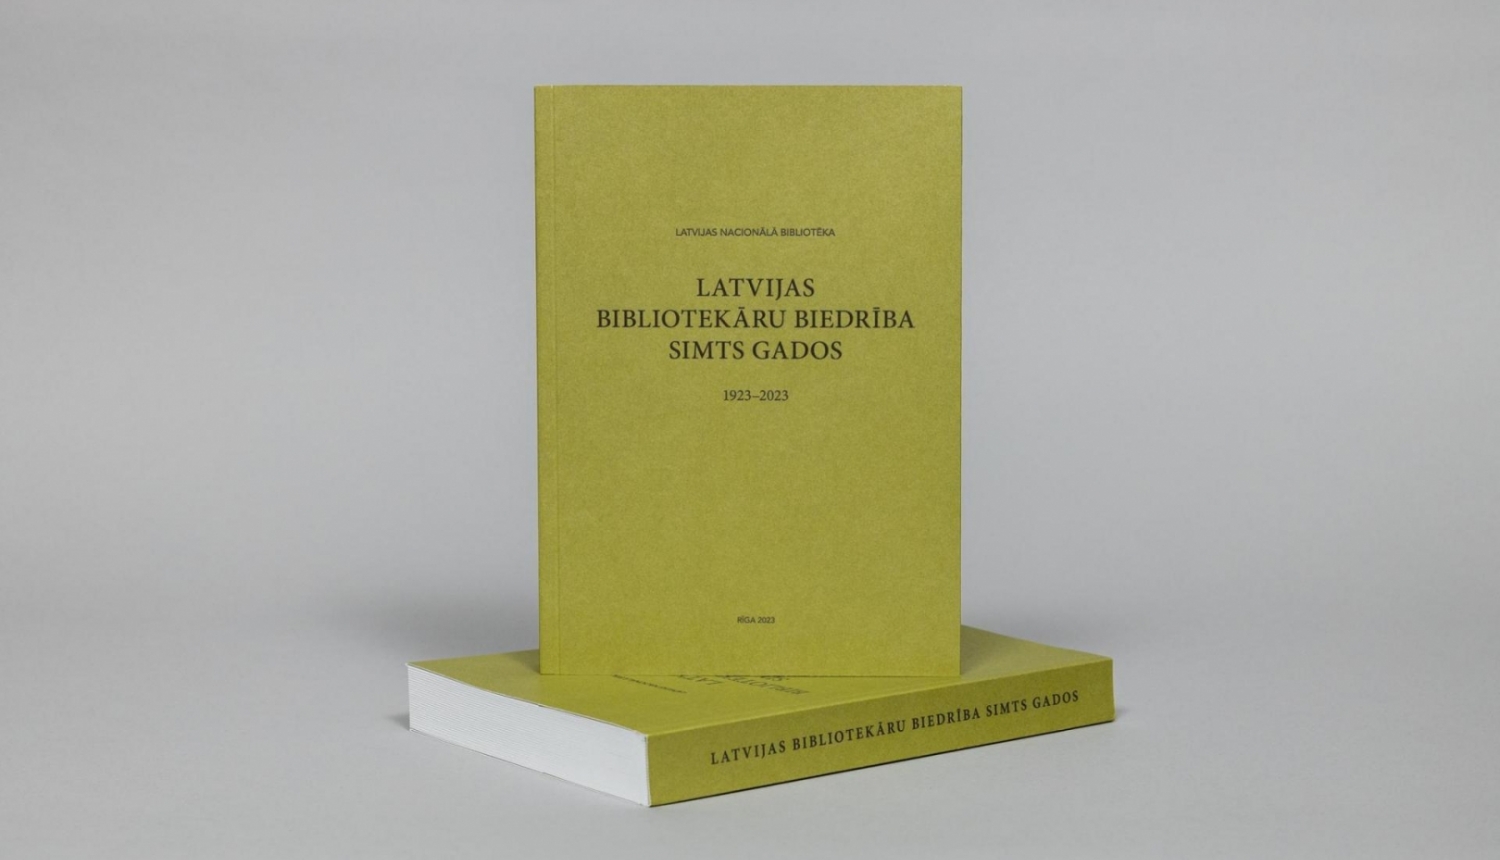 Izdevums “Latvijas Bibliotekāru biedrība simts gados”